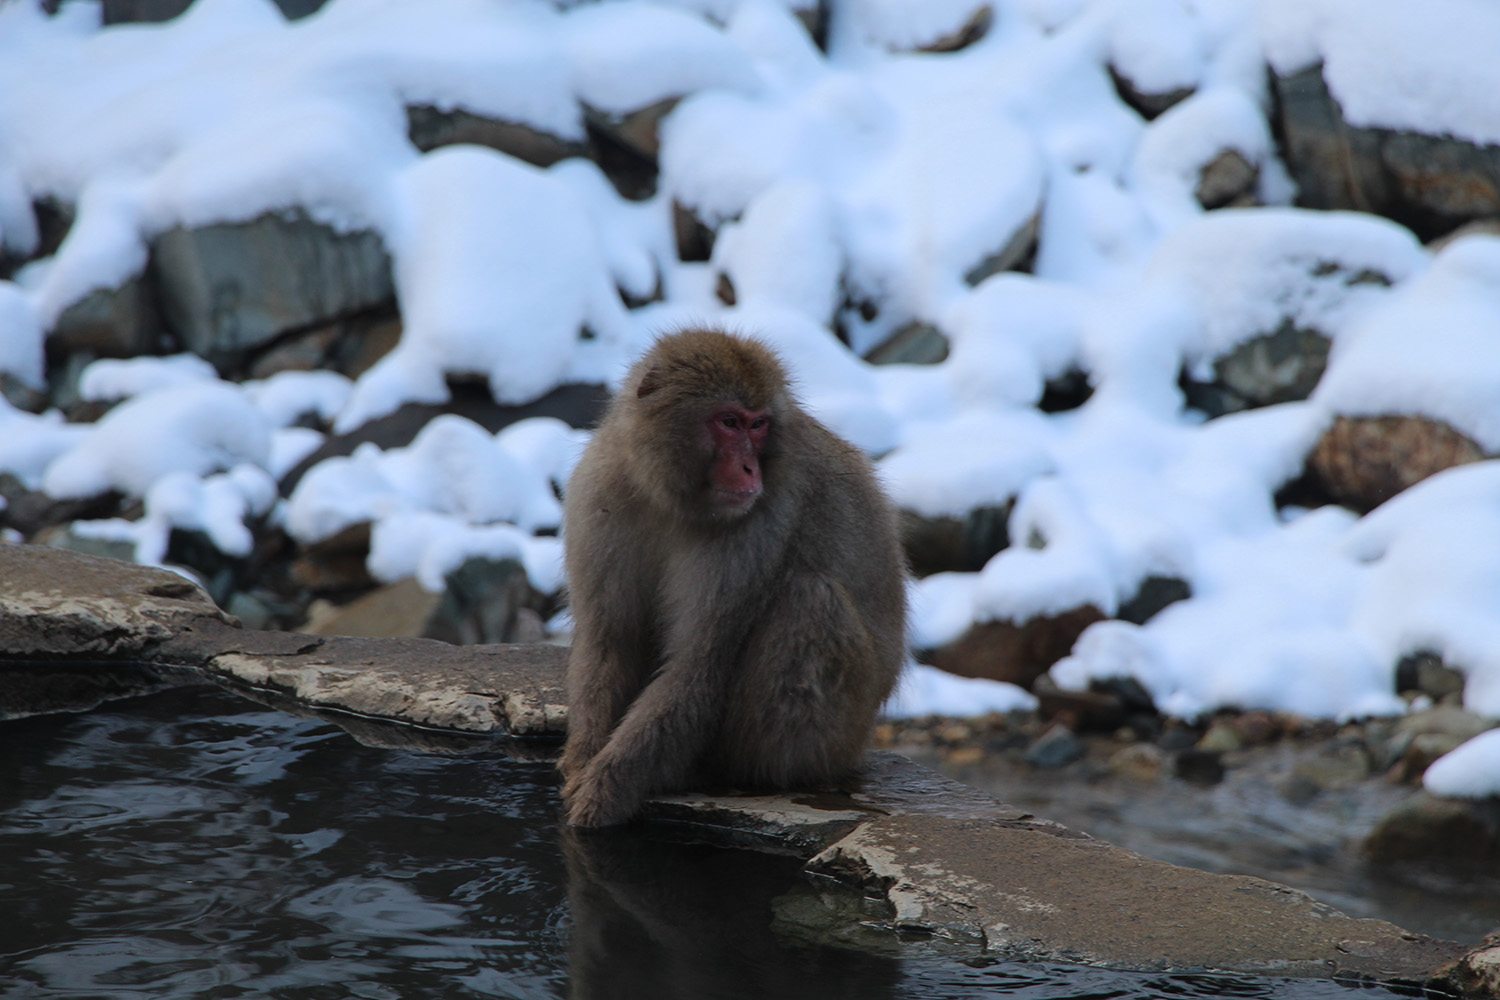 Nagano singes neige snow monkey_38